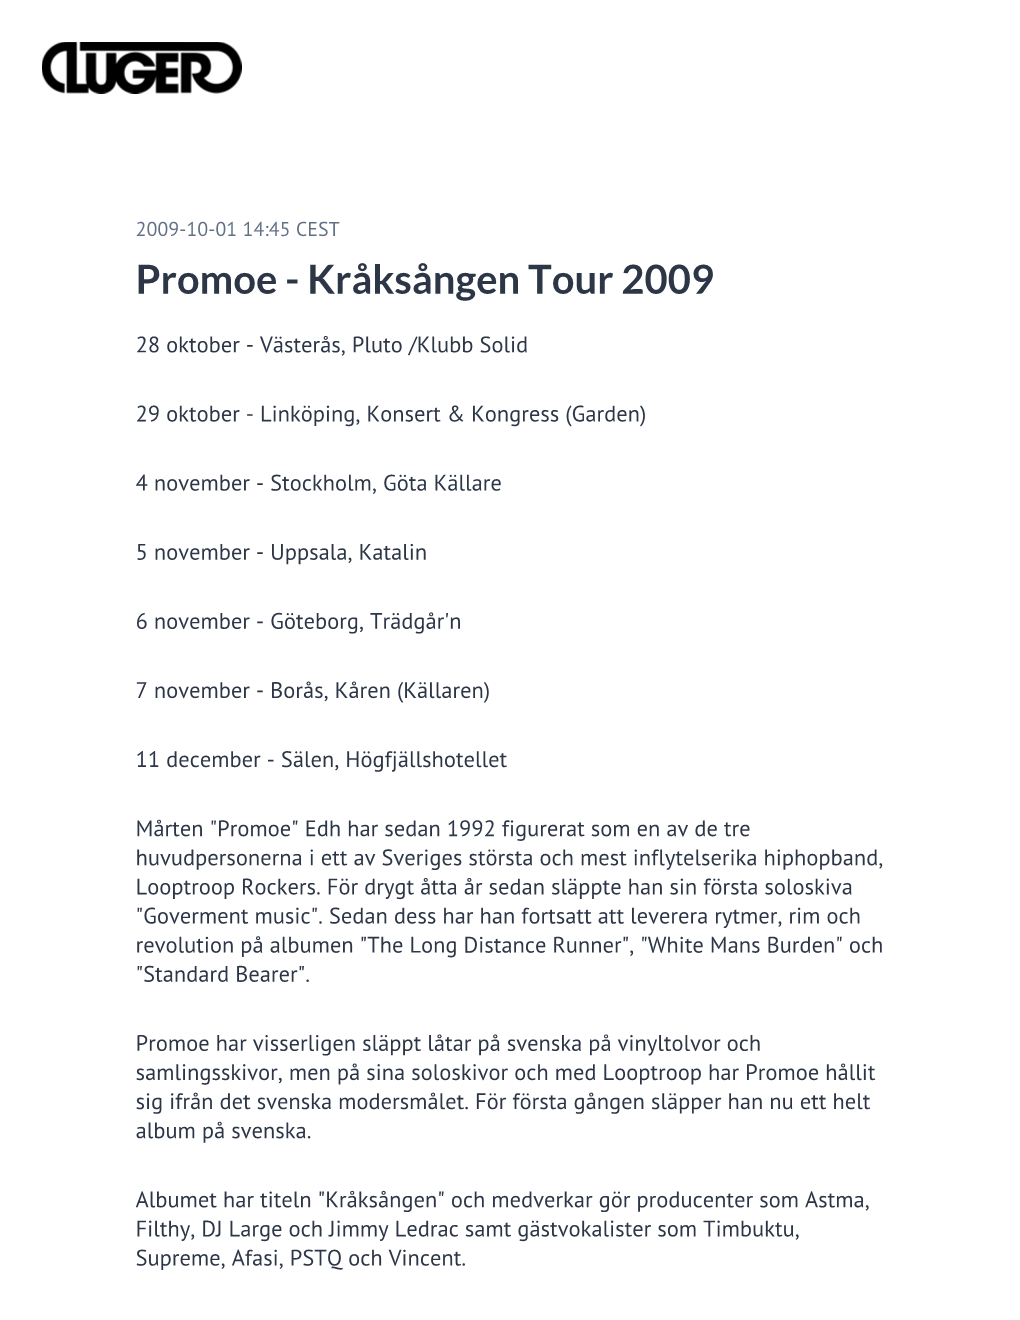 Promoe - Kråksången Tour 2009